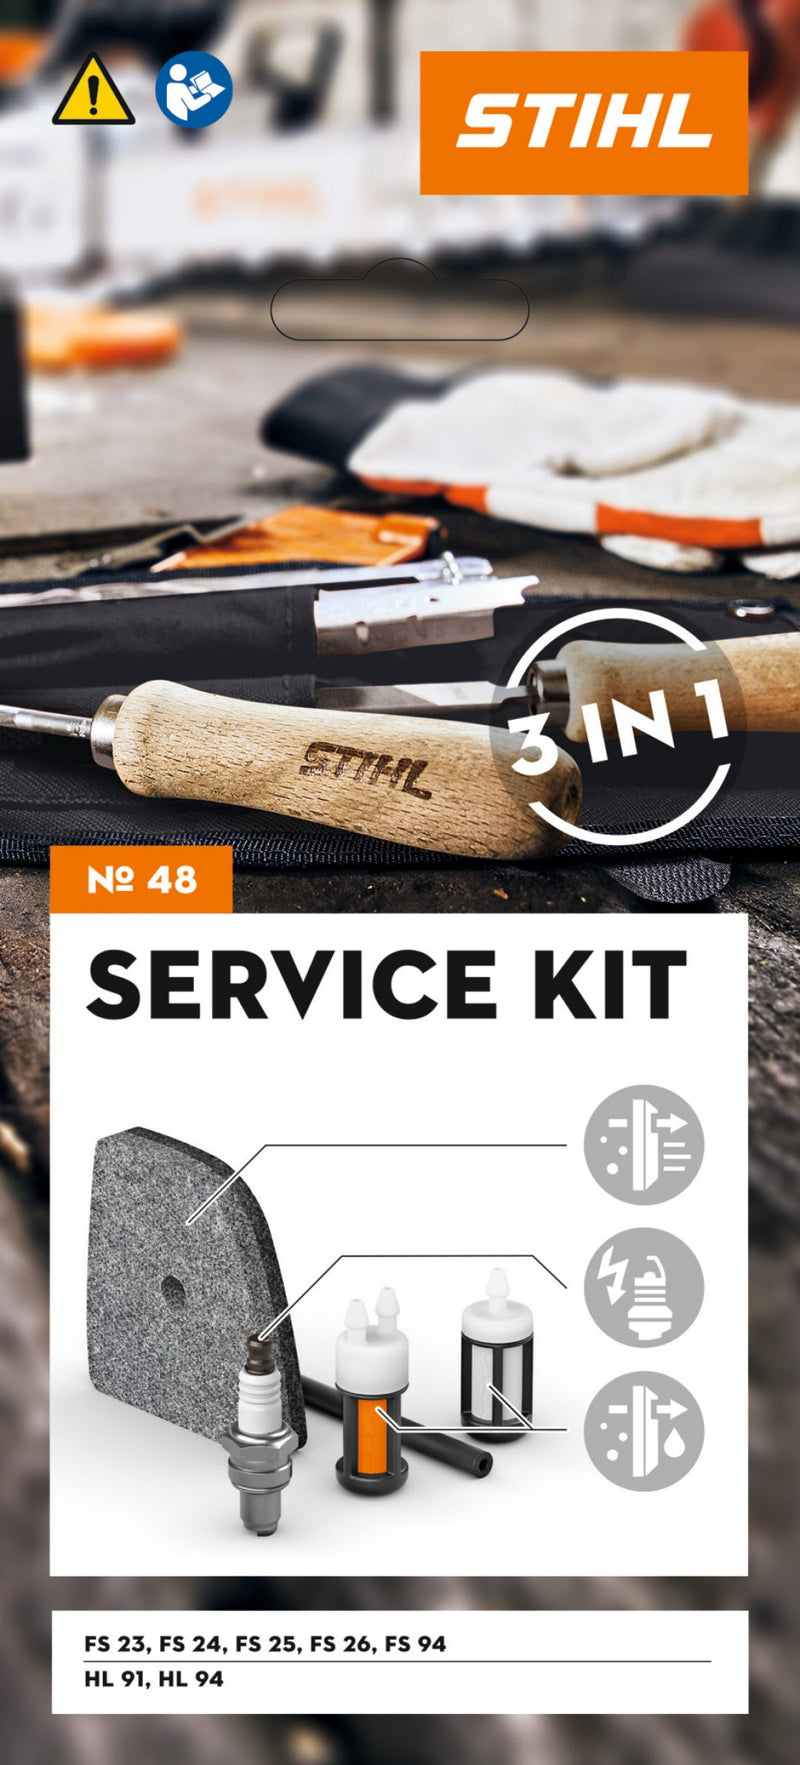 SERVICE KIT entretien - Stihl - N°48 - pour FS 94, HL 91 ou HL 94